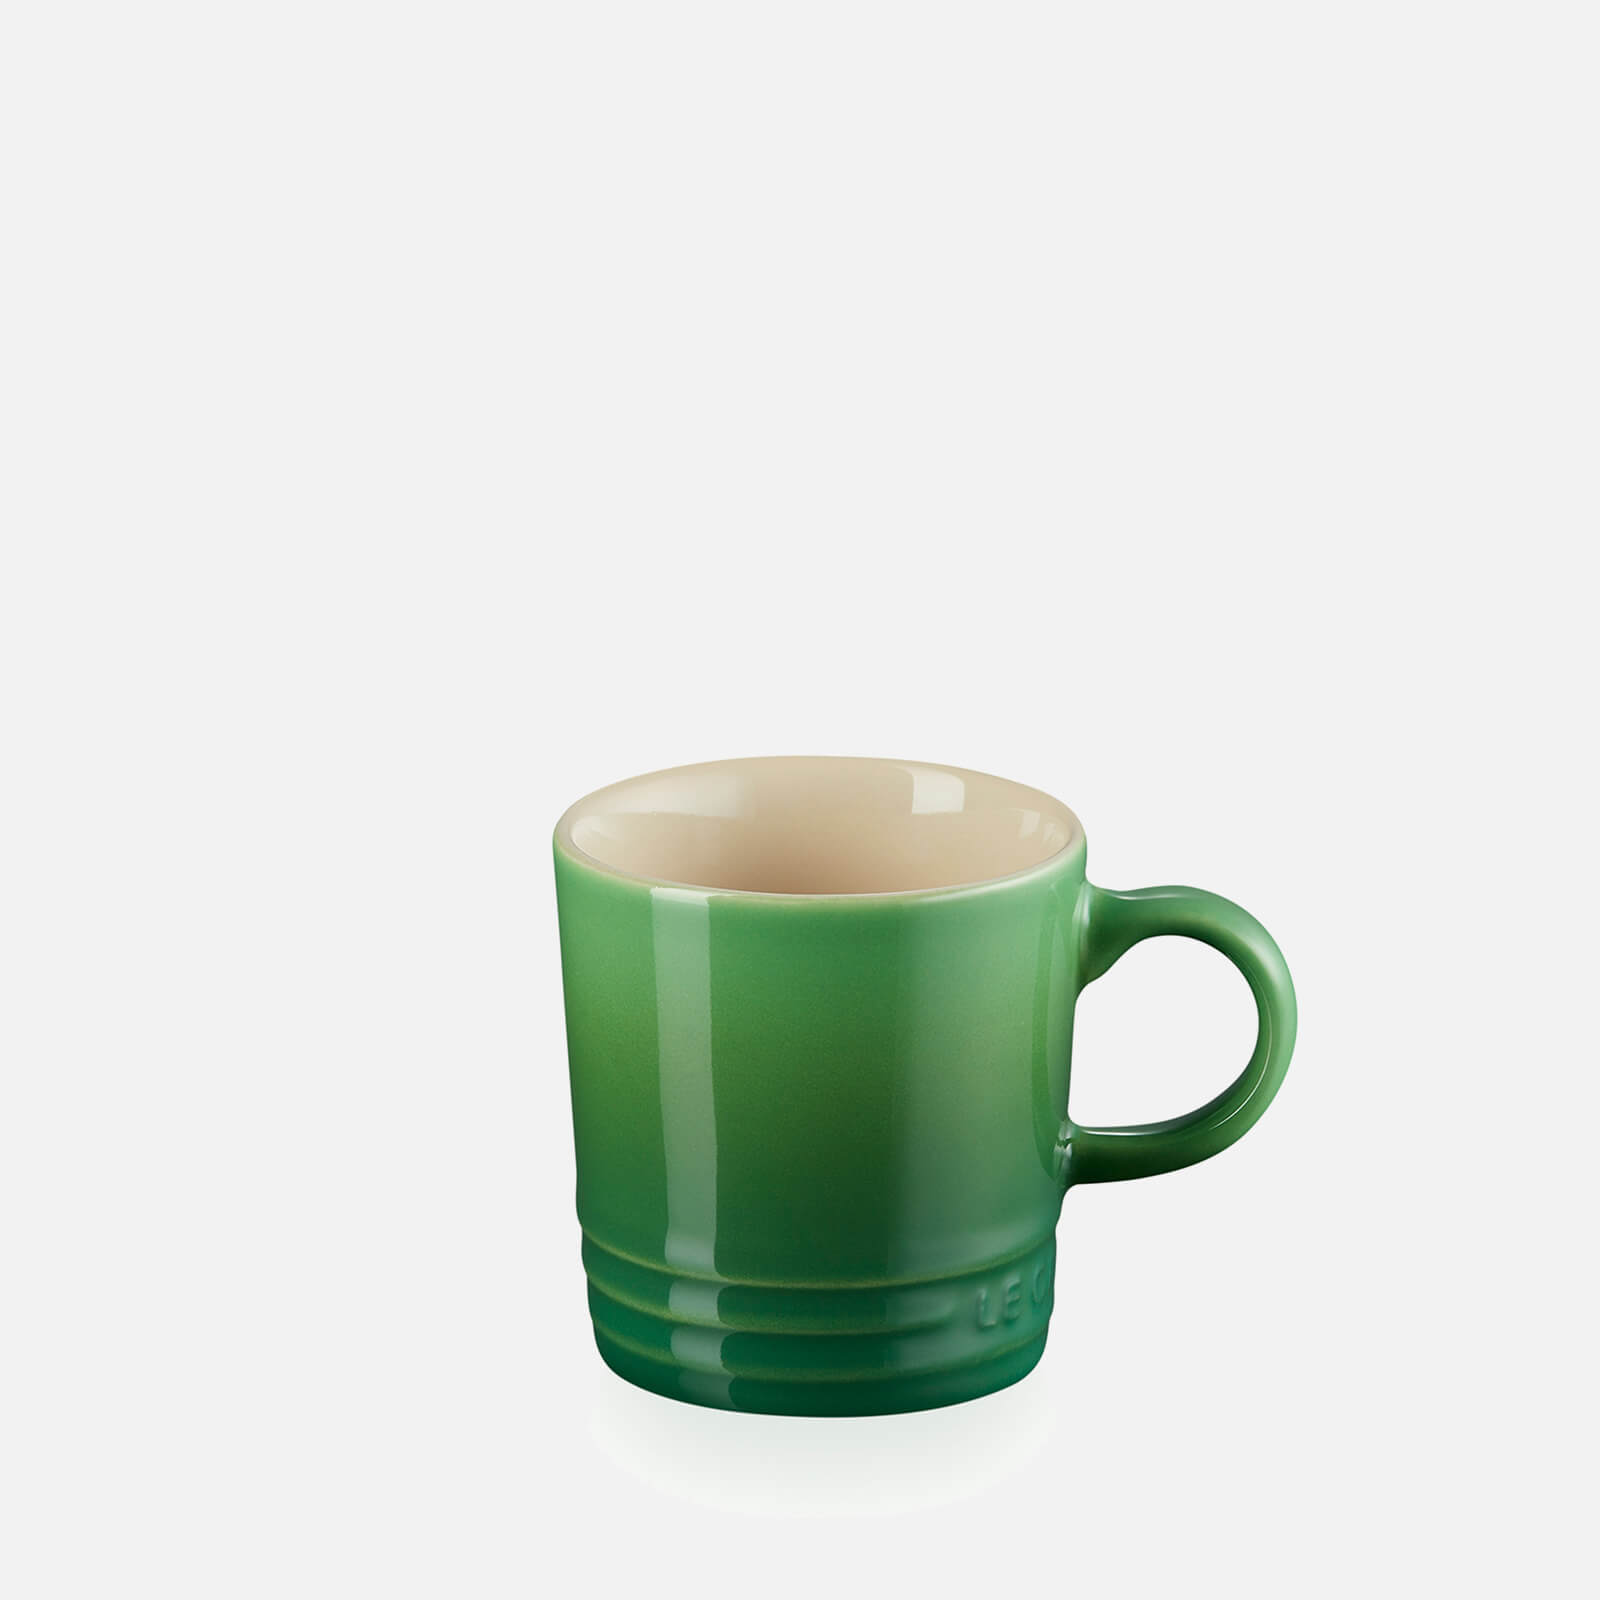 Photos - Mug / Cup Le Creuset Stoneware Espresso Mug - 100ml - Bamboo Green 70305104080099 